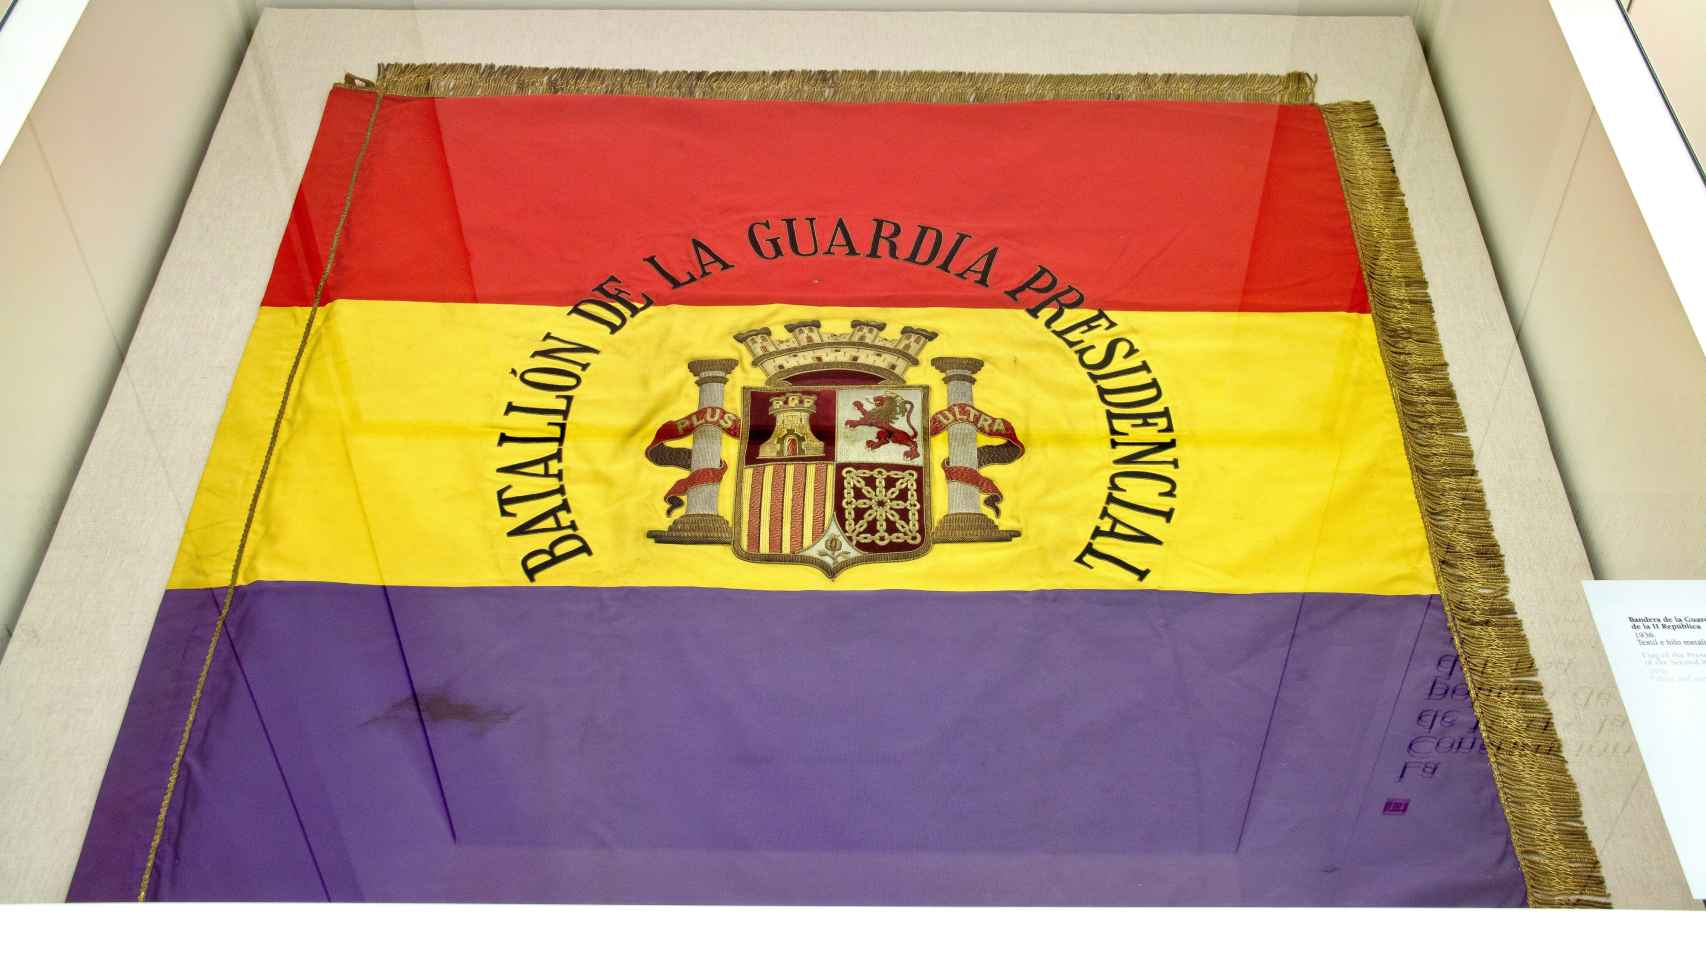 Esta es la bandera de la República con la que Azaña cruzó al exilio el 5 de febrero de 1939. Hoy se conserva en el Museo del Ejército, en Toledo, tras años de apariciones y desapariciones. No está expuesta al público todavía porque a punto estuvo de quemarse en un incendio.